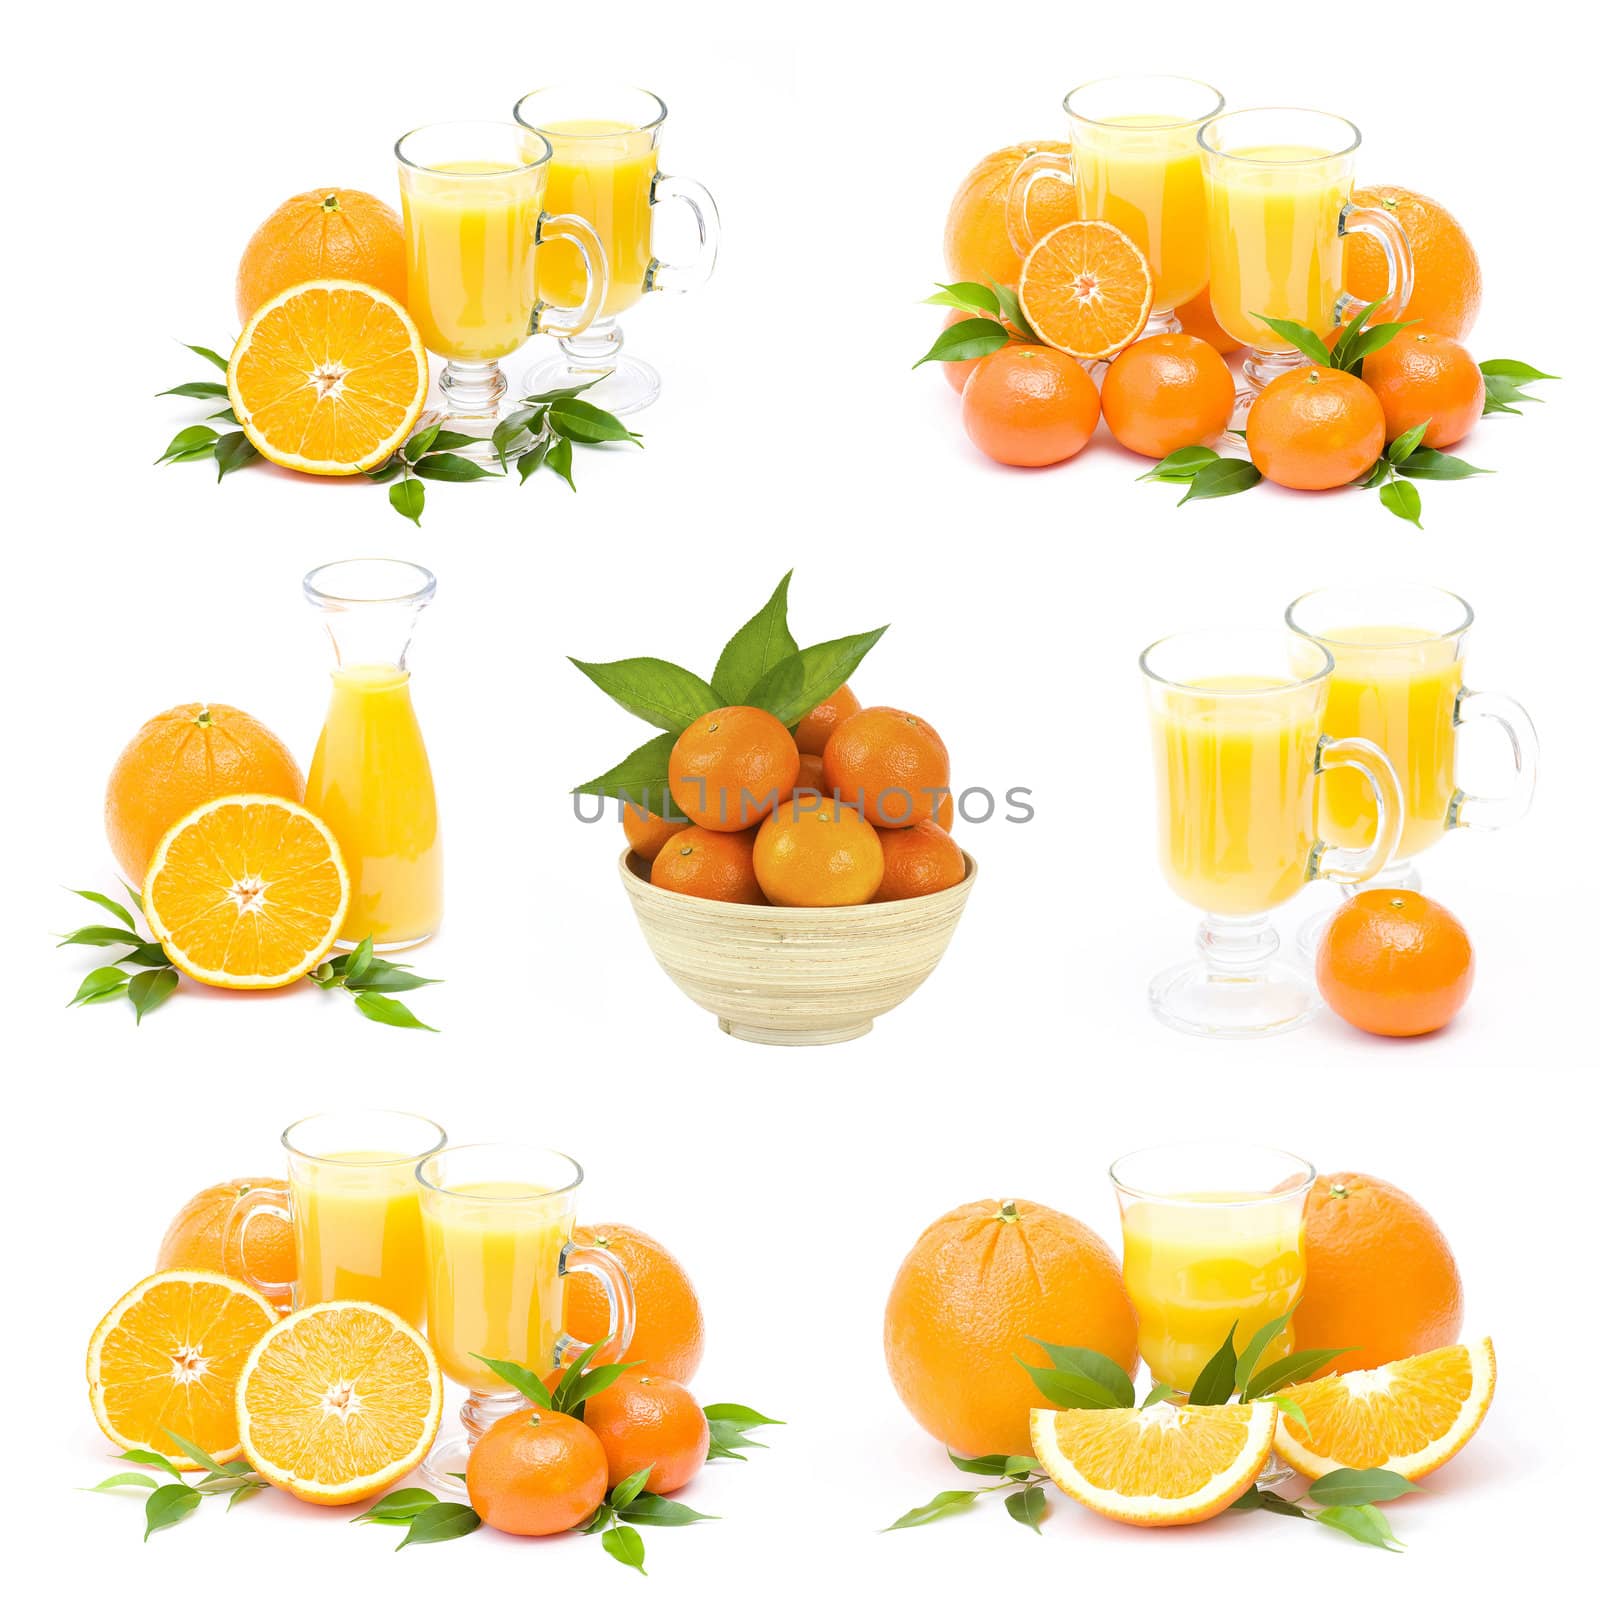 orange juice and fresh fruits - collage by miradrozdowski